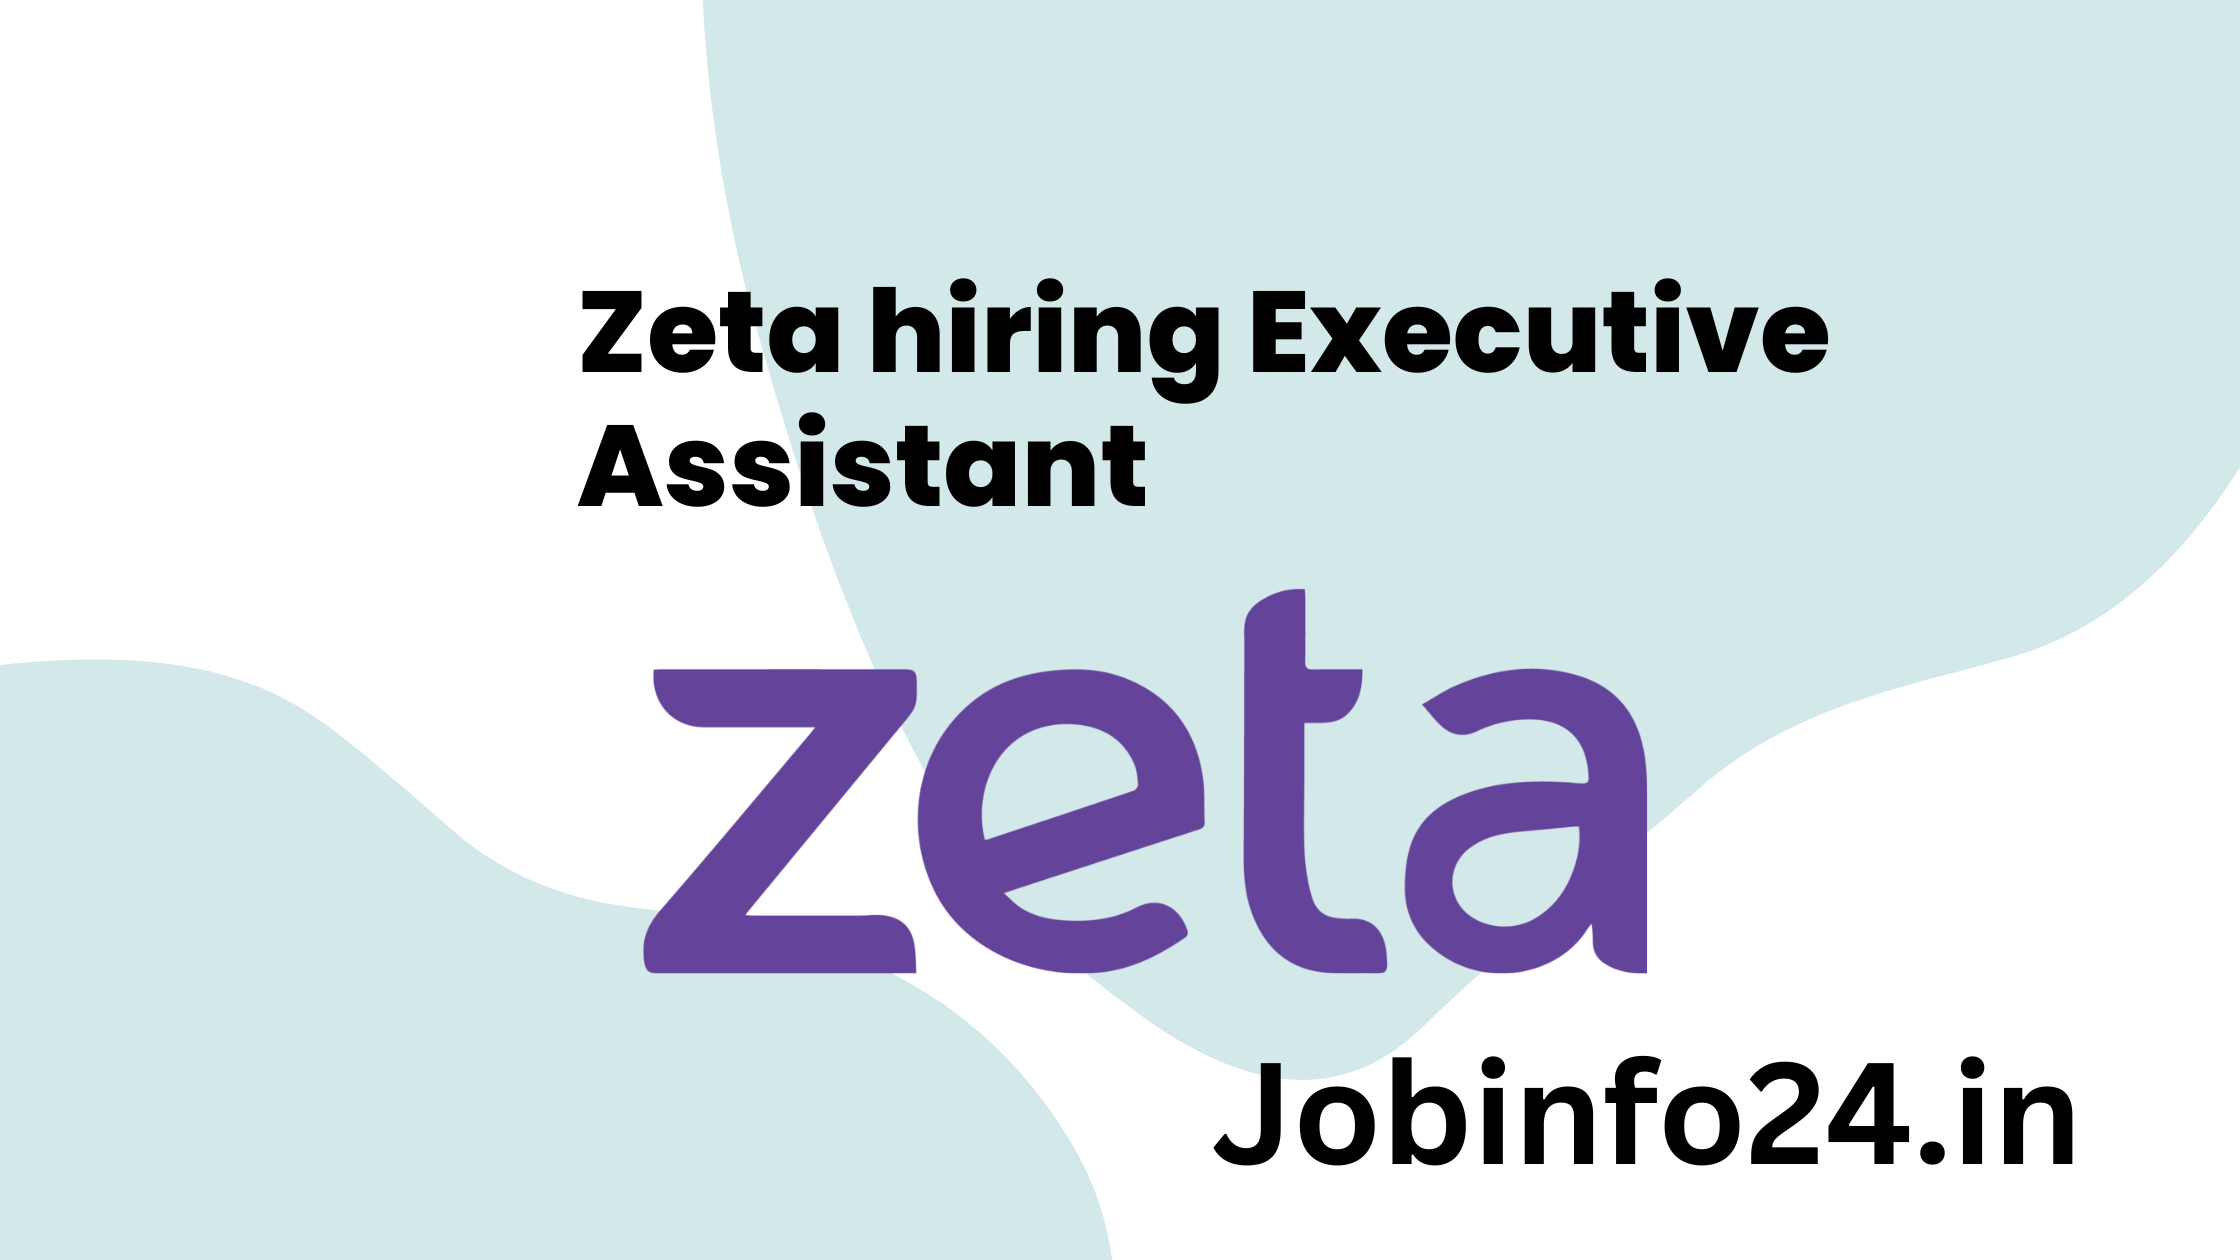 Zeta hiring Executive Assistant